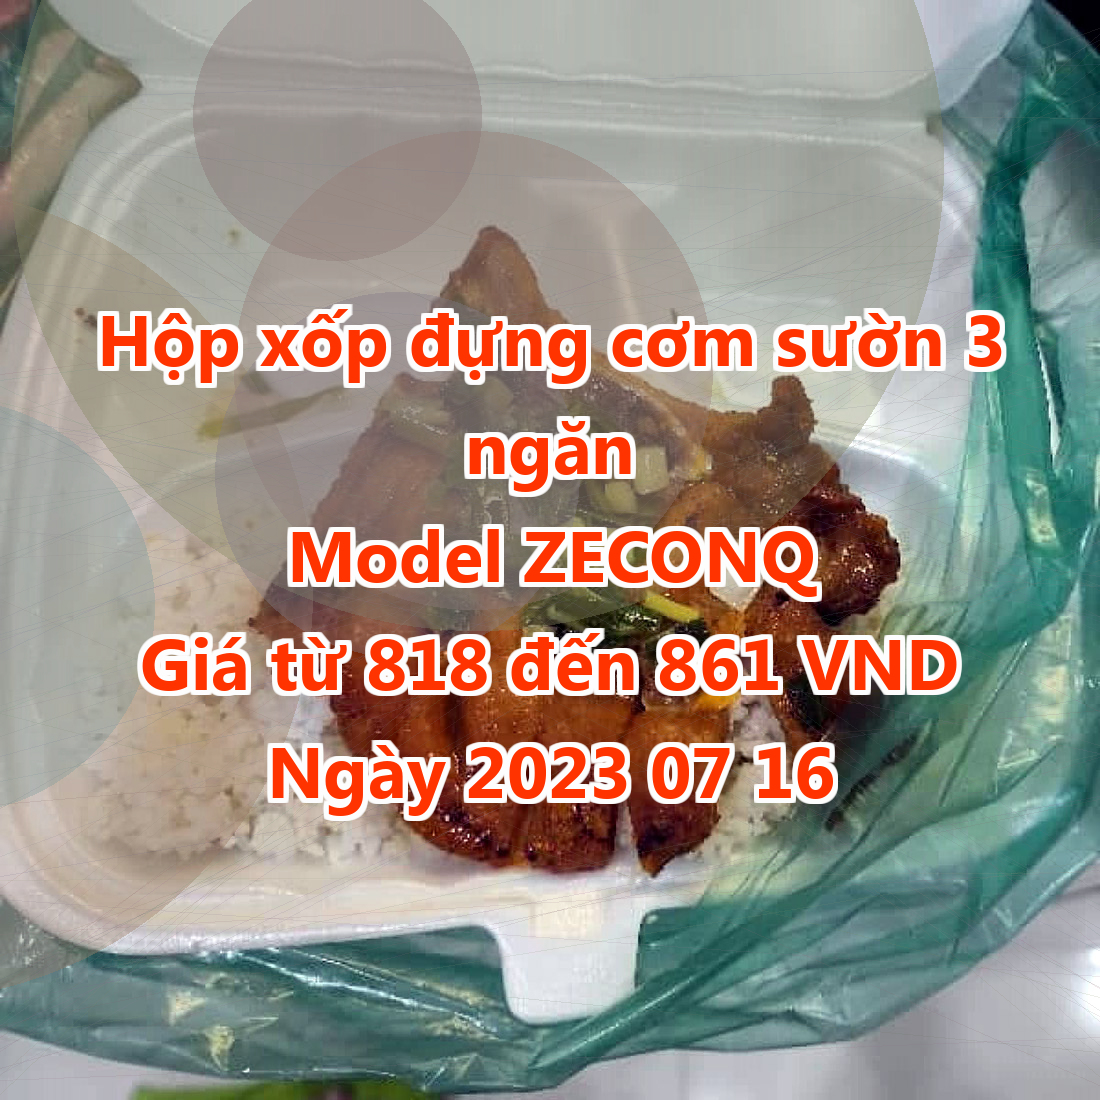 Hộp xốp đựng cơm sườn 3 ngăn - Model ZECONQ